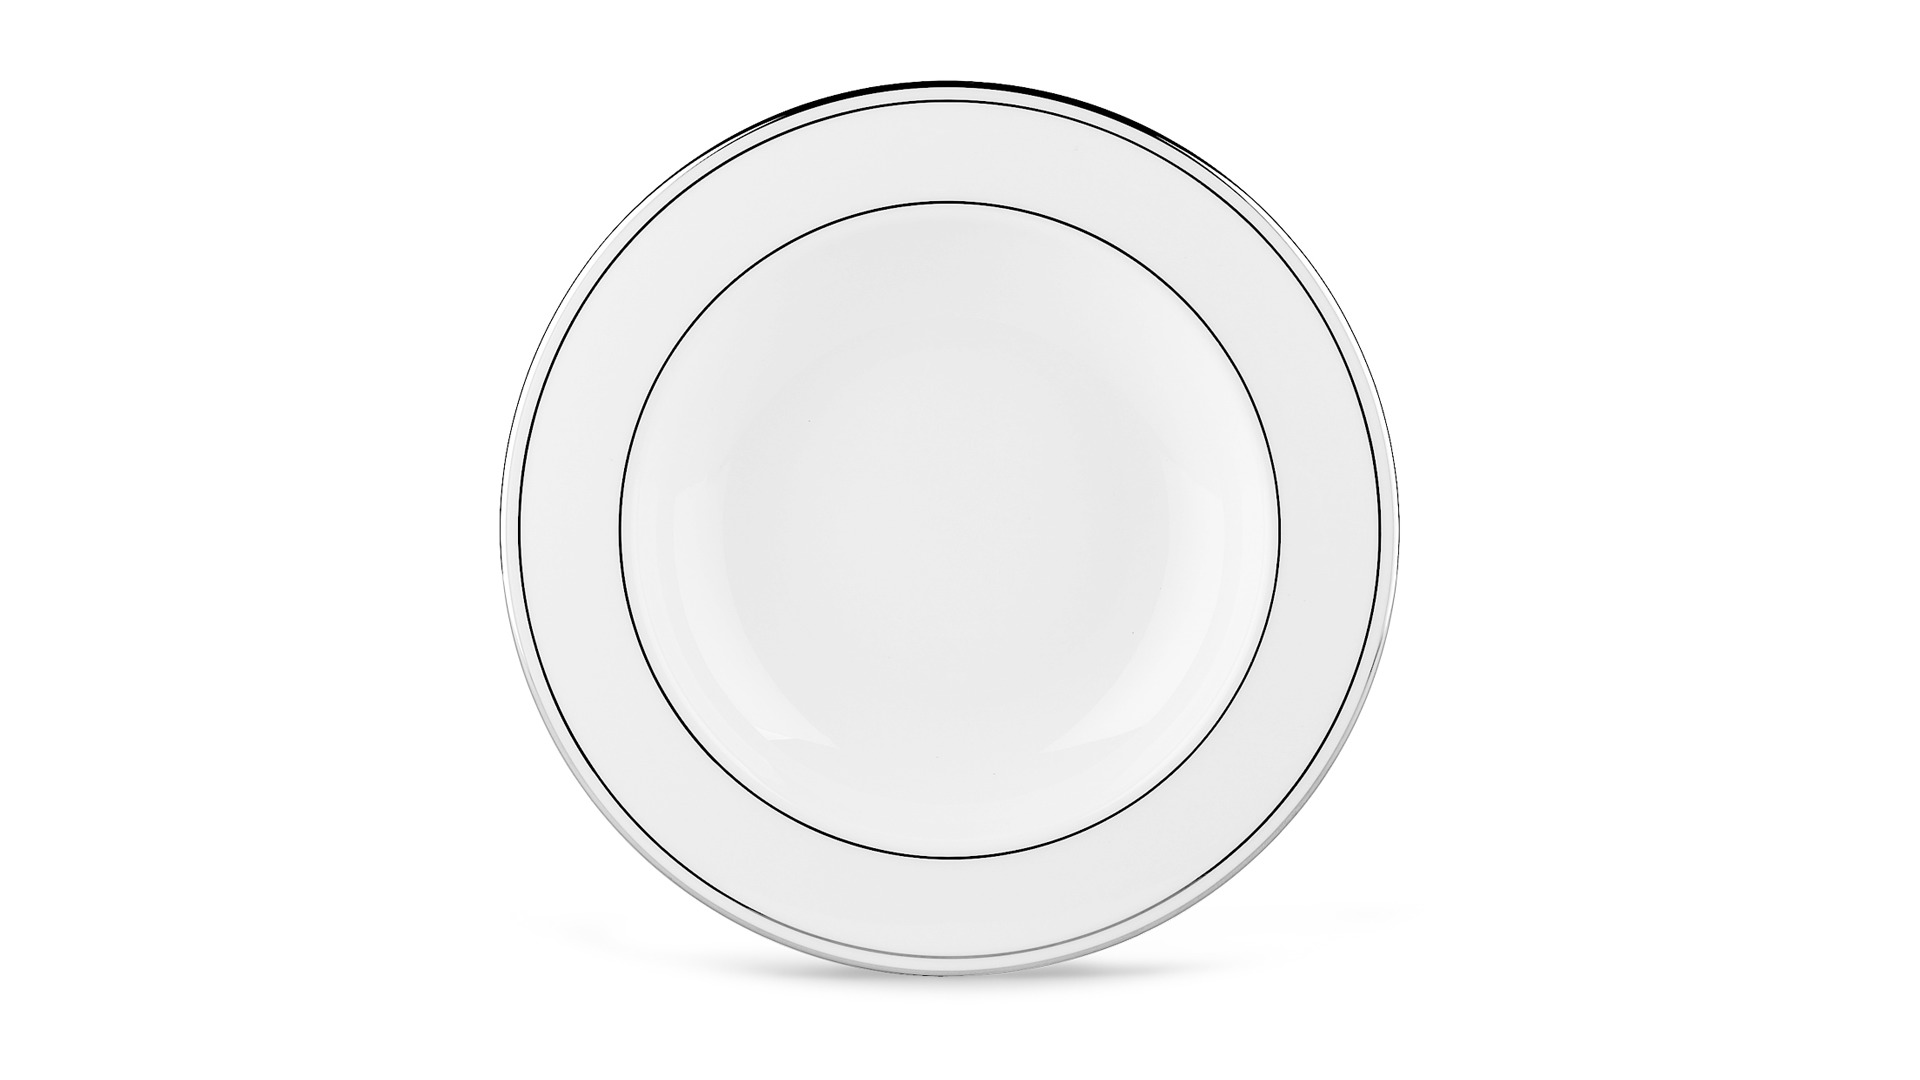 Набор тарелок суповых Lenox Федеральный, платиновый кант 23 см, фарфор, 6 шт